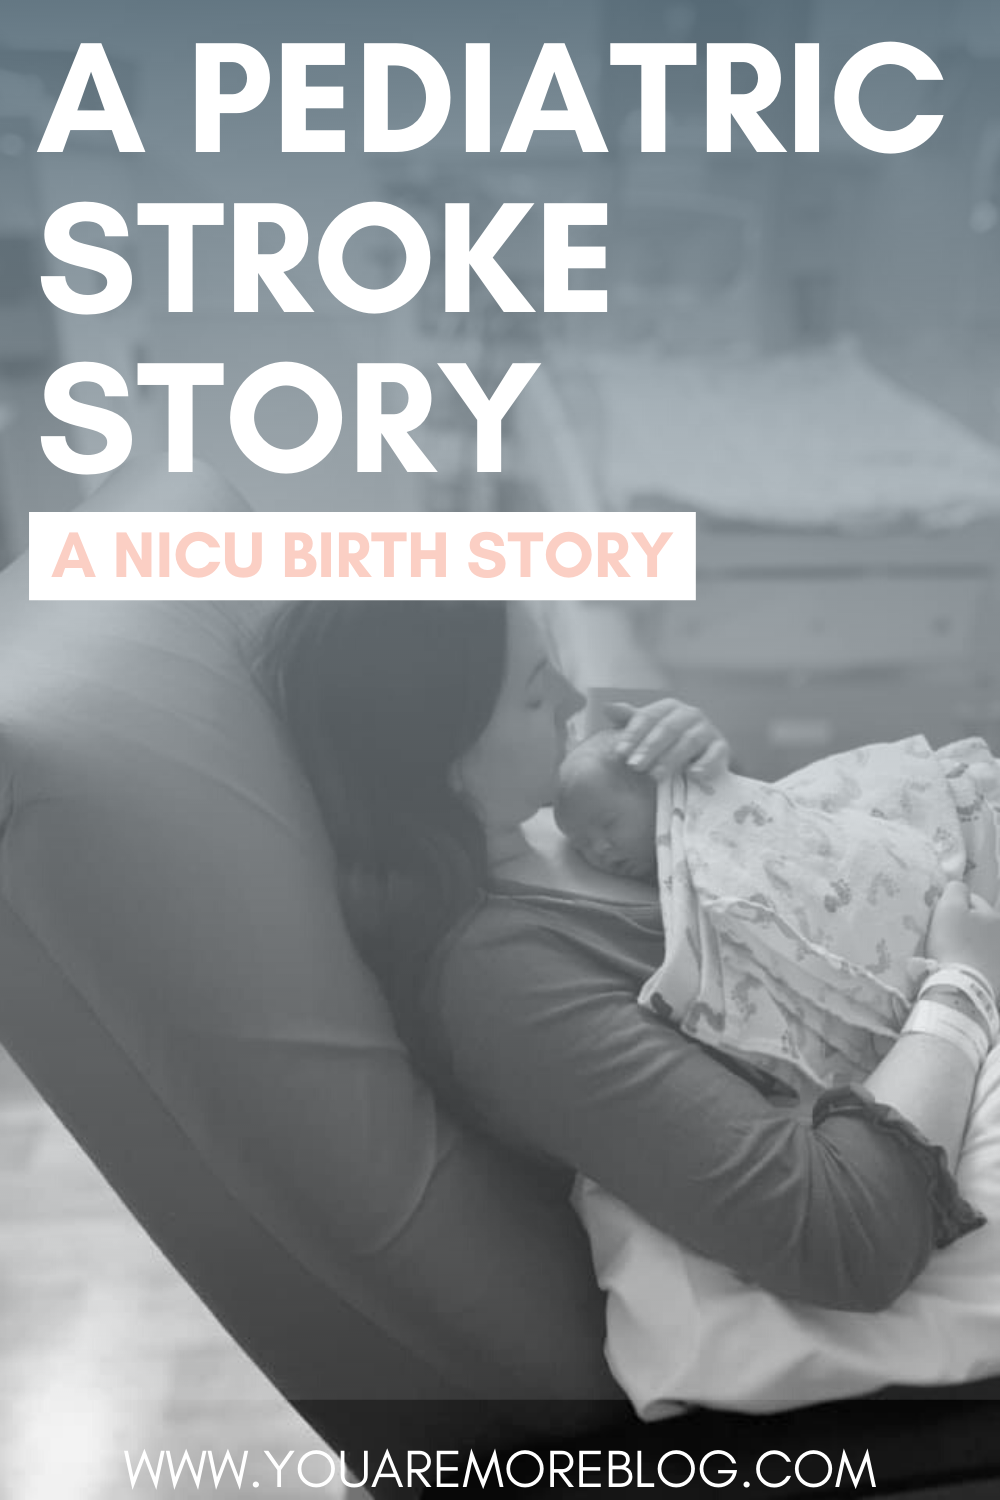 A Pediatric Stroke Story - NICU Birth Story.